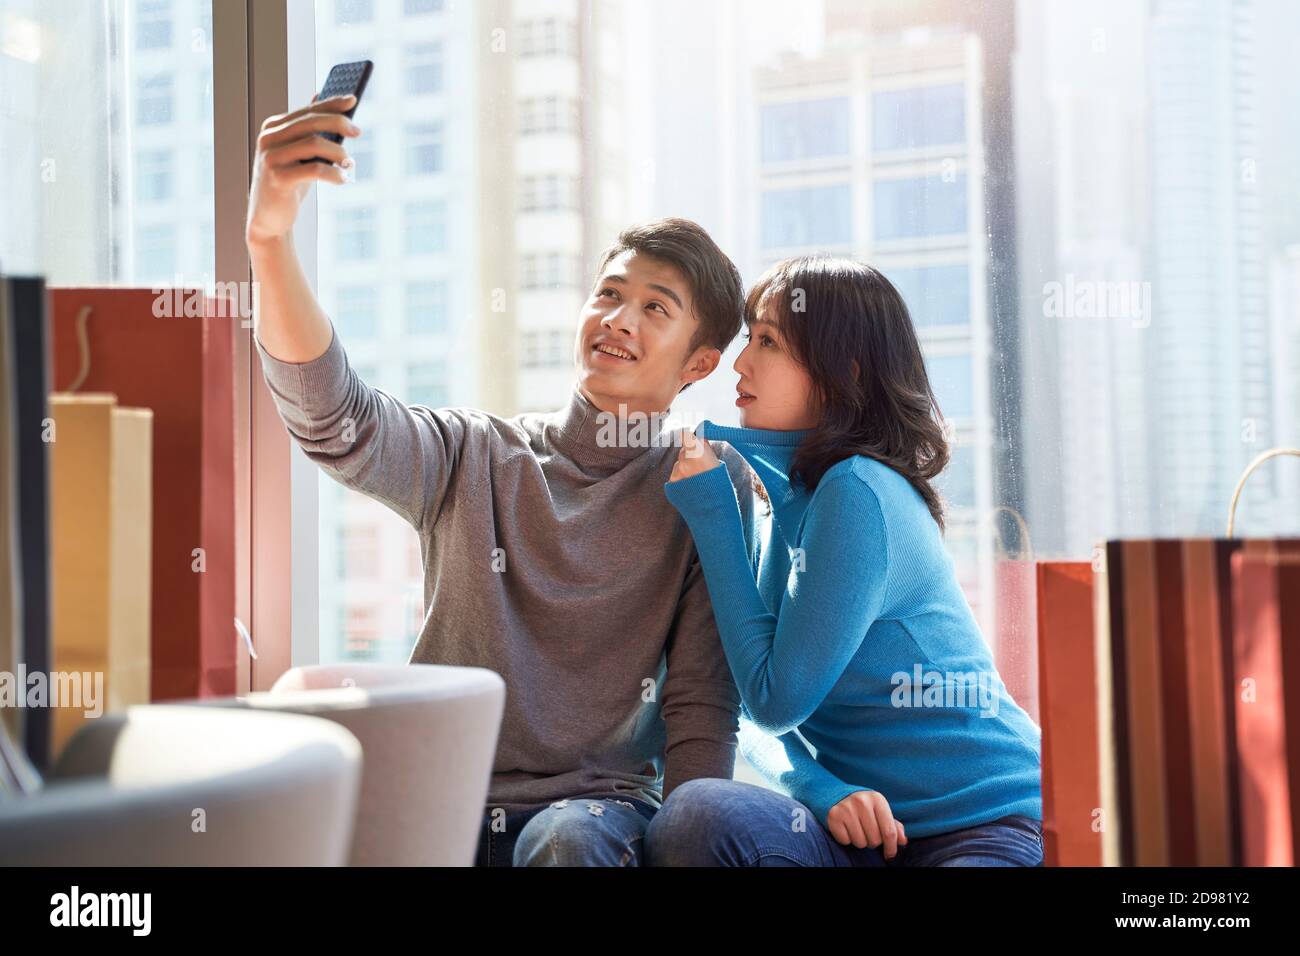 un jeune couple asiatique heureux prend un selfie dans la chambre d'hôtel après avoir fait du shopping dans la ville Banque D'Images